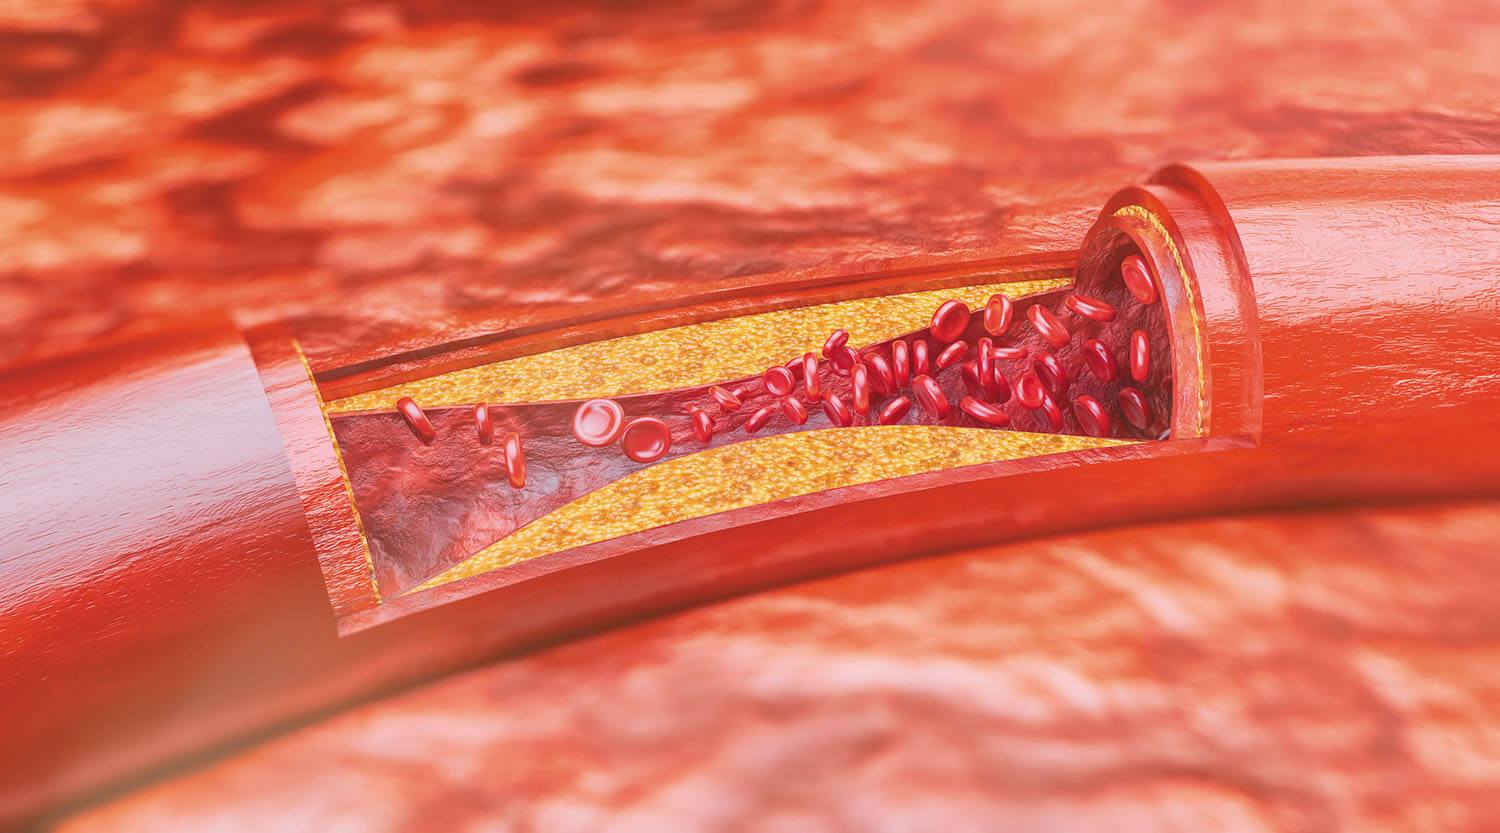 Plaque Artery